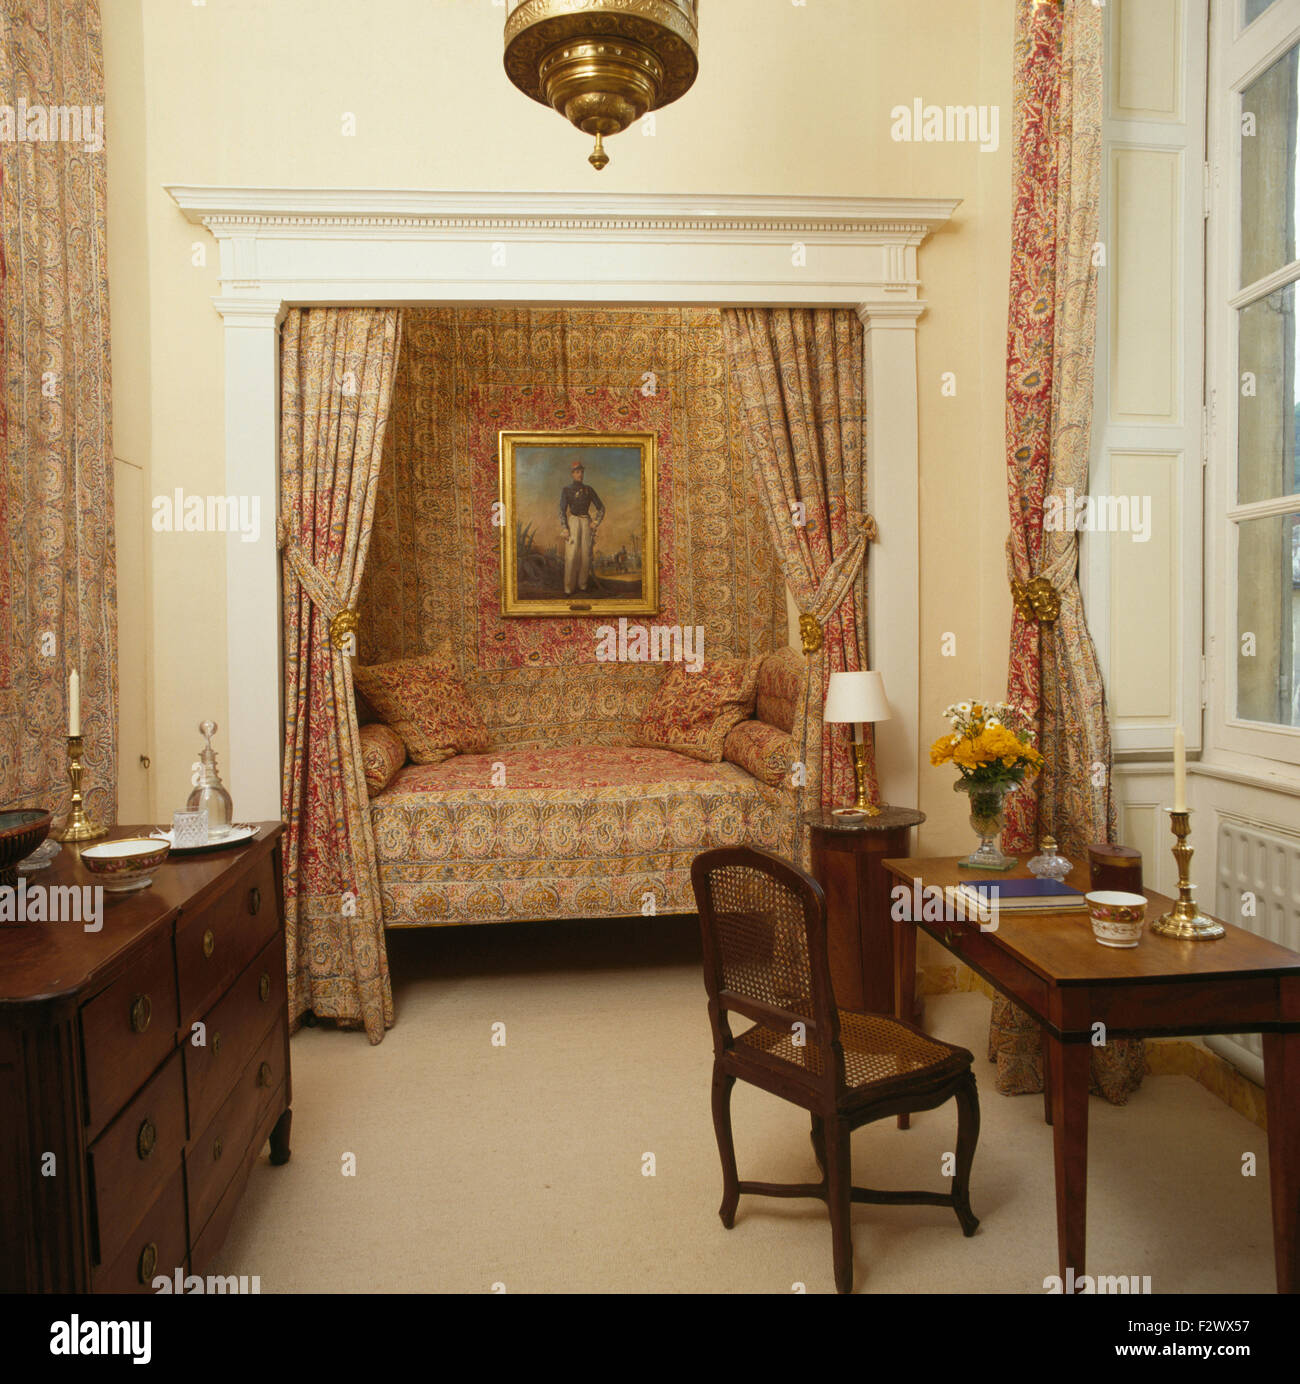 Tende con motivi geometrici su letto alcova in ottanta paese francese camera da letto con mobili antichi Foto Stock